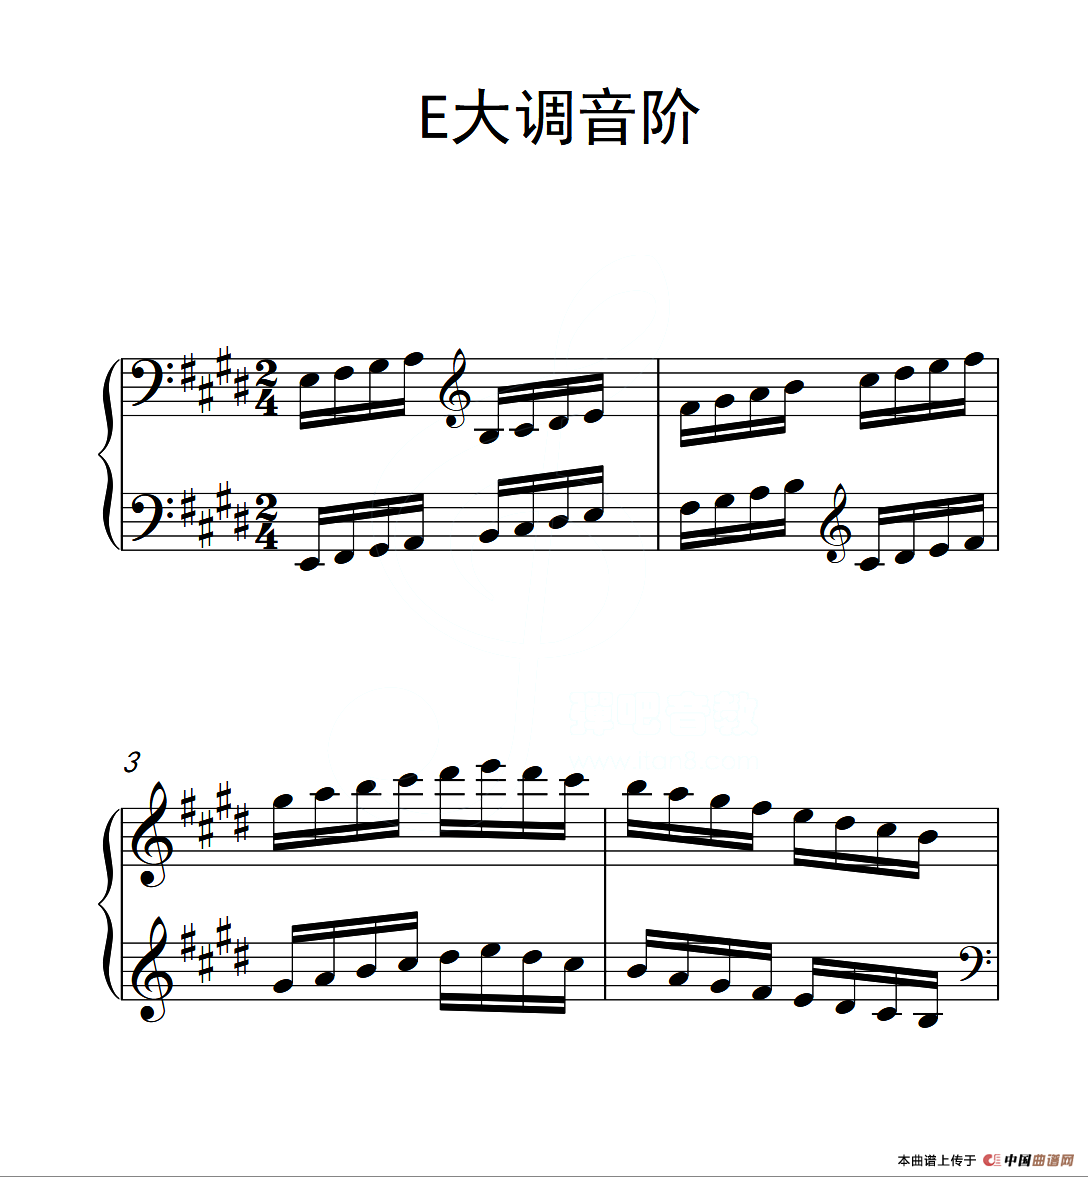 第三级 E大调音阶（中国音乐学院钢琴考级作品